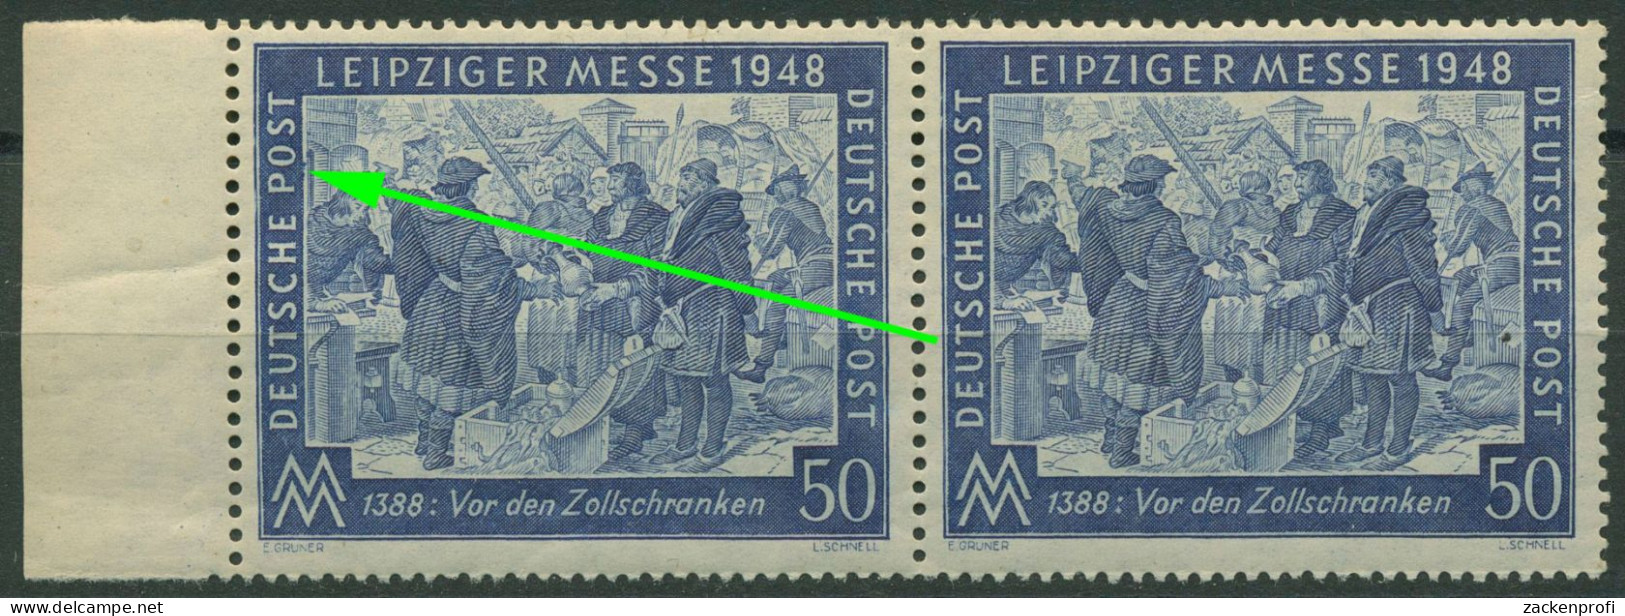 Alliierte Besetzung 1948 Leipziger Messe Mit Plattenfehler 967 I Postfrisch - Ungebraucht